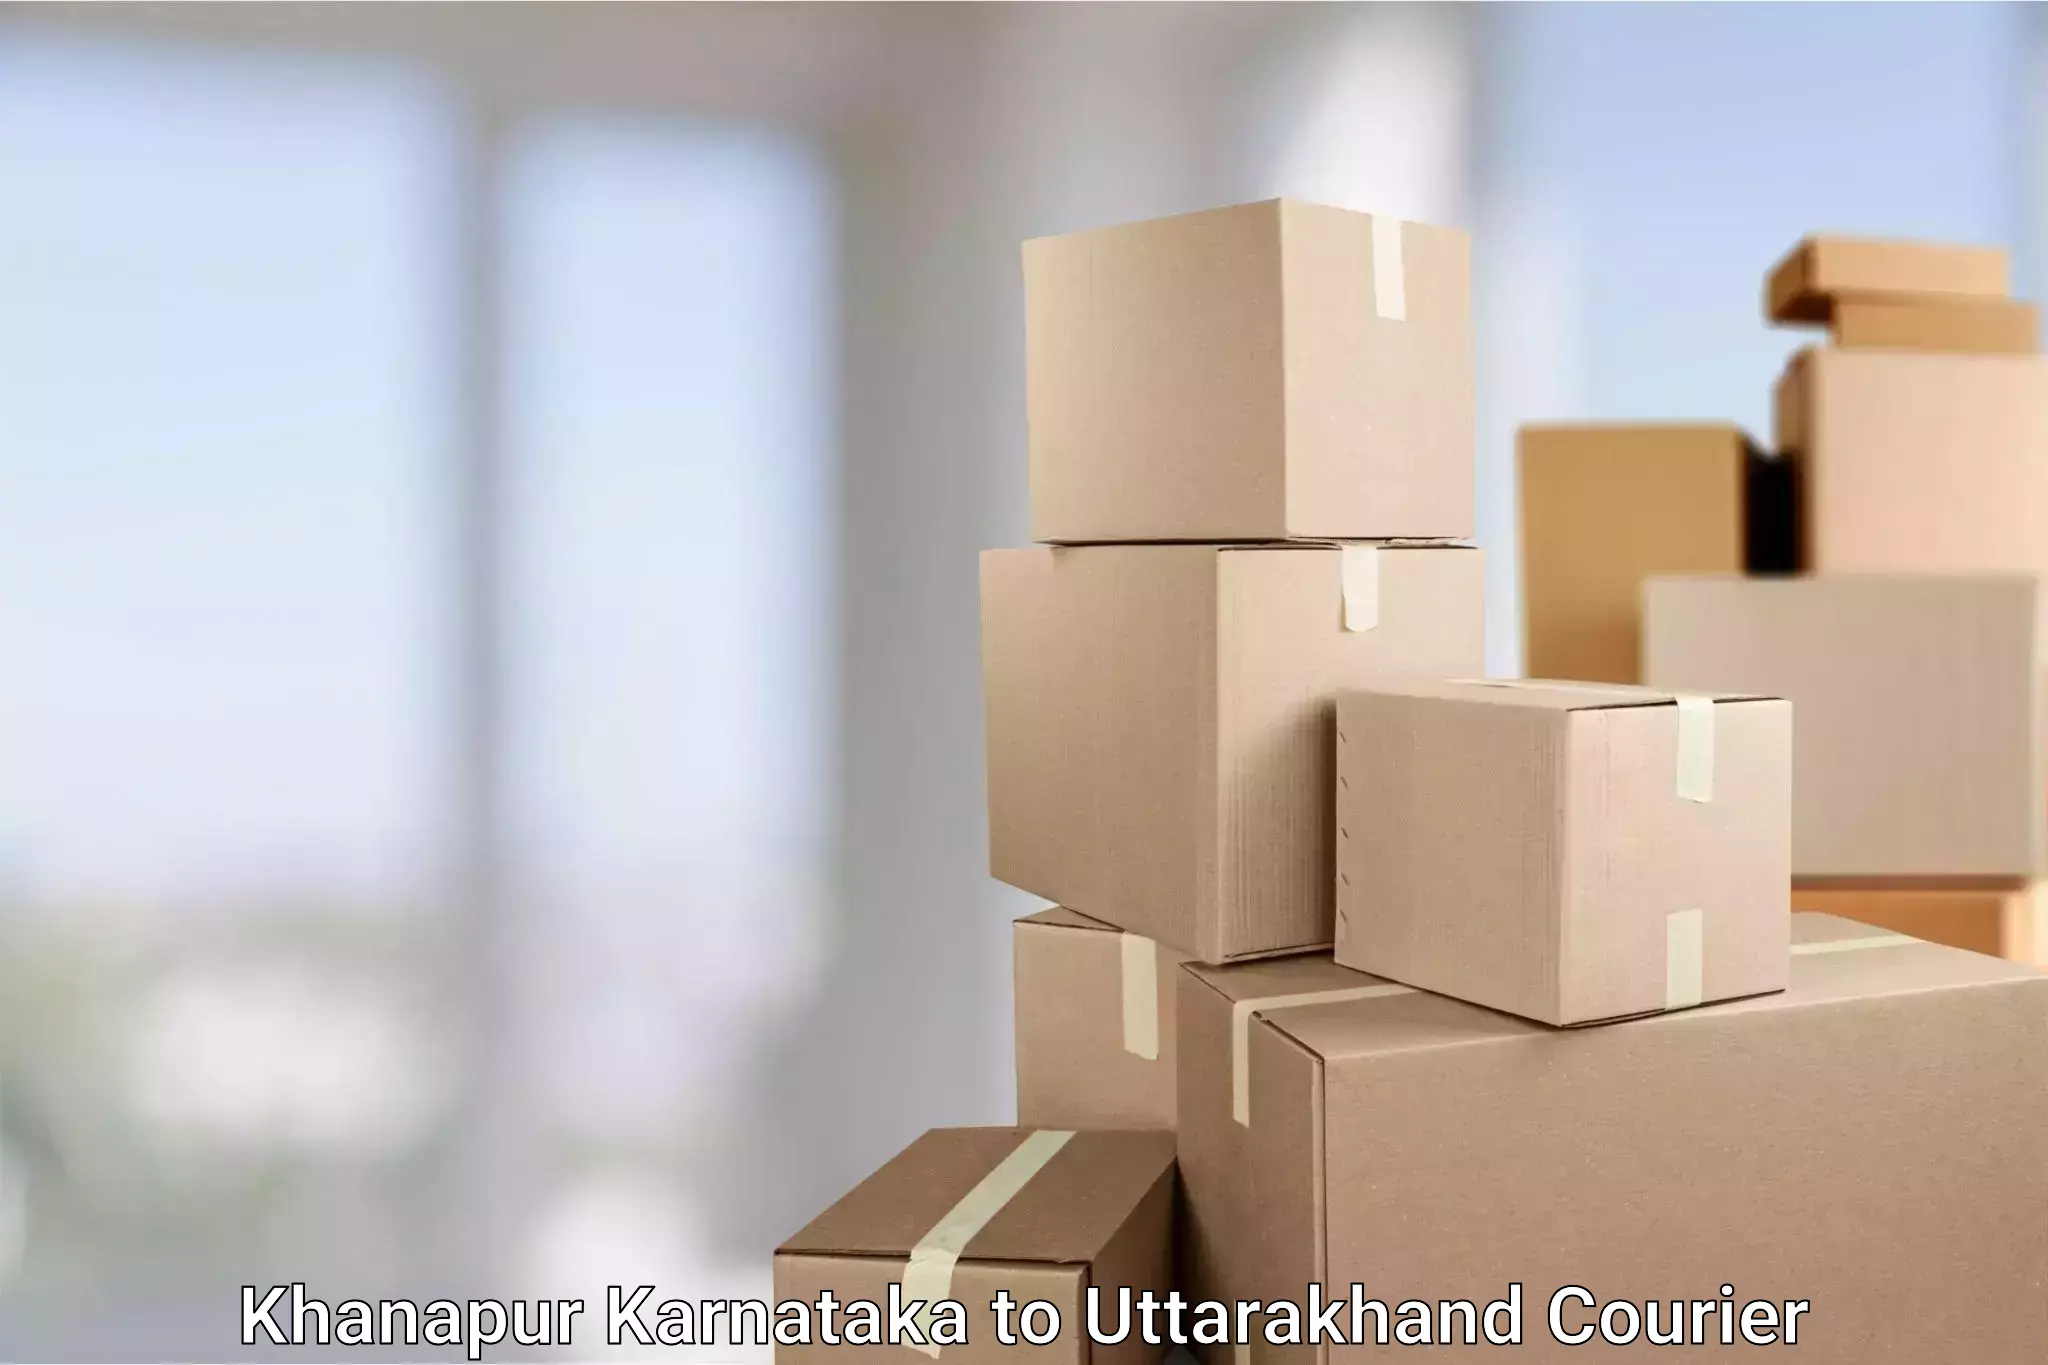 Efficient parcel tracking Khanapur Karnataka to Dehradun